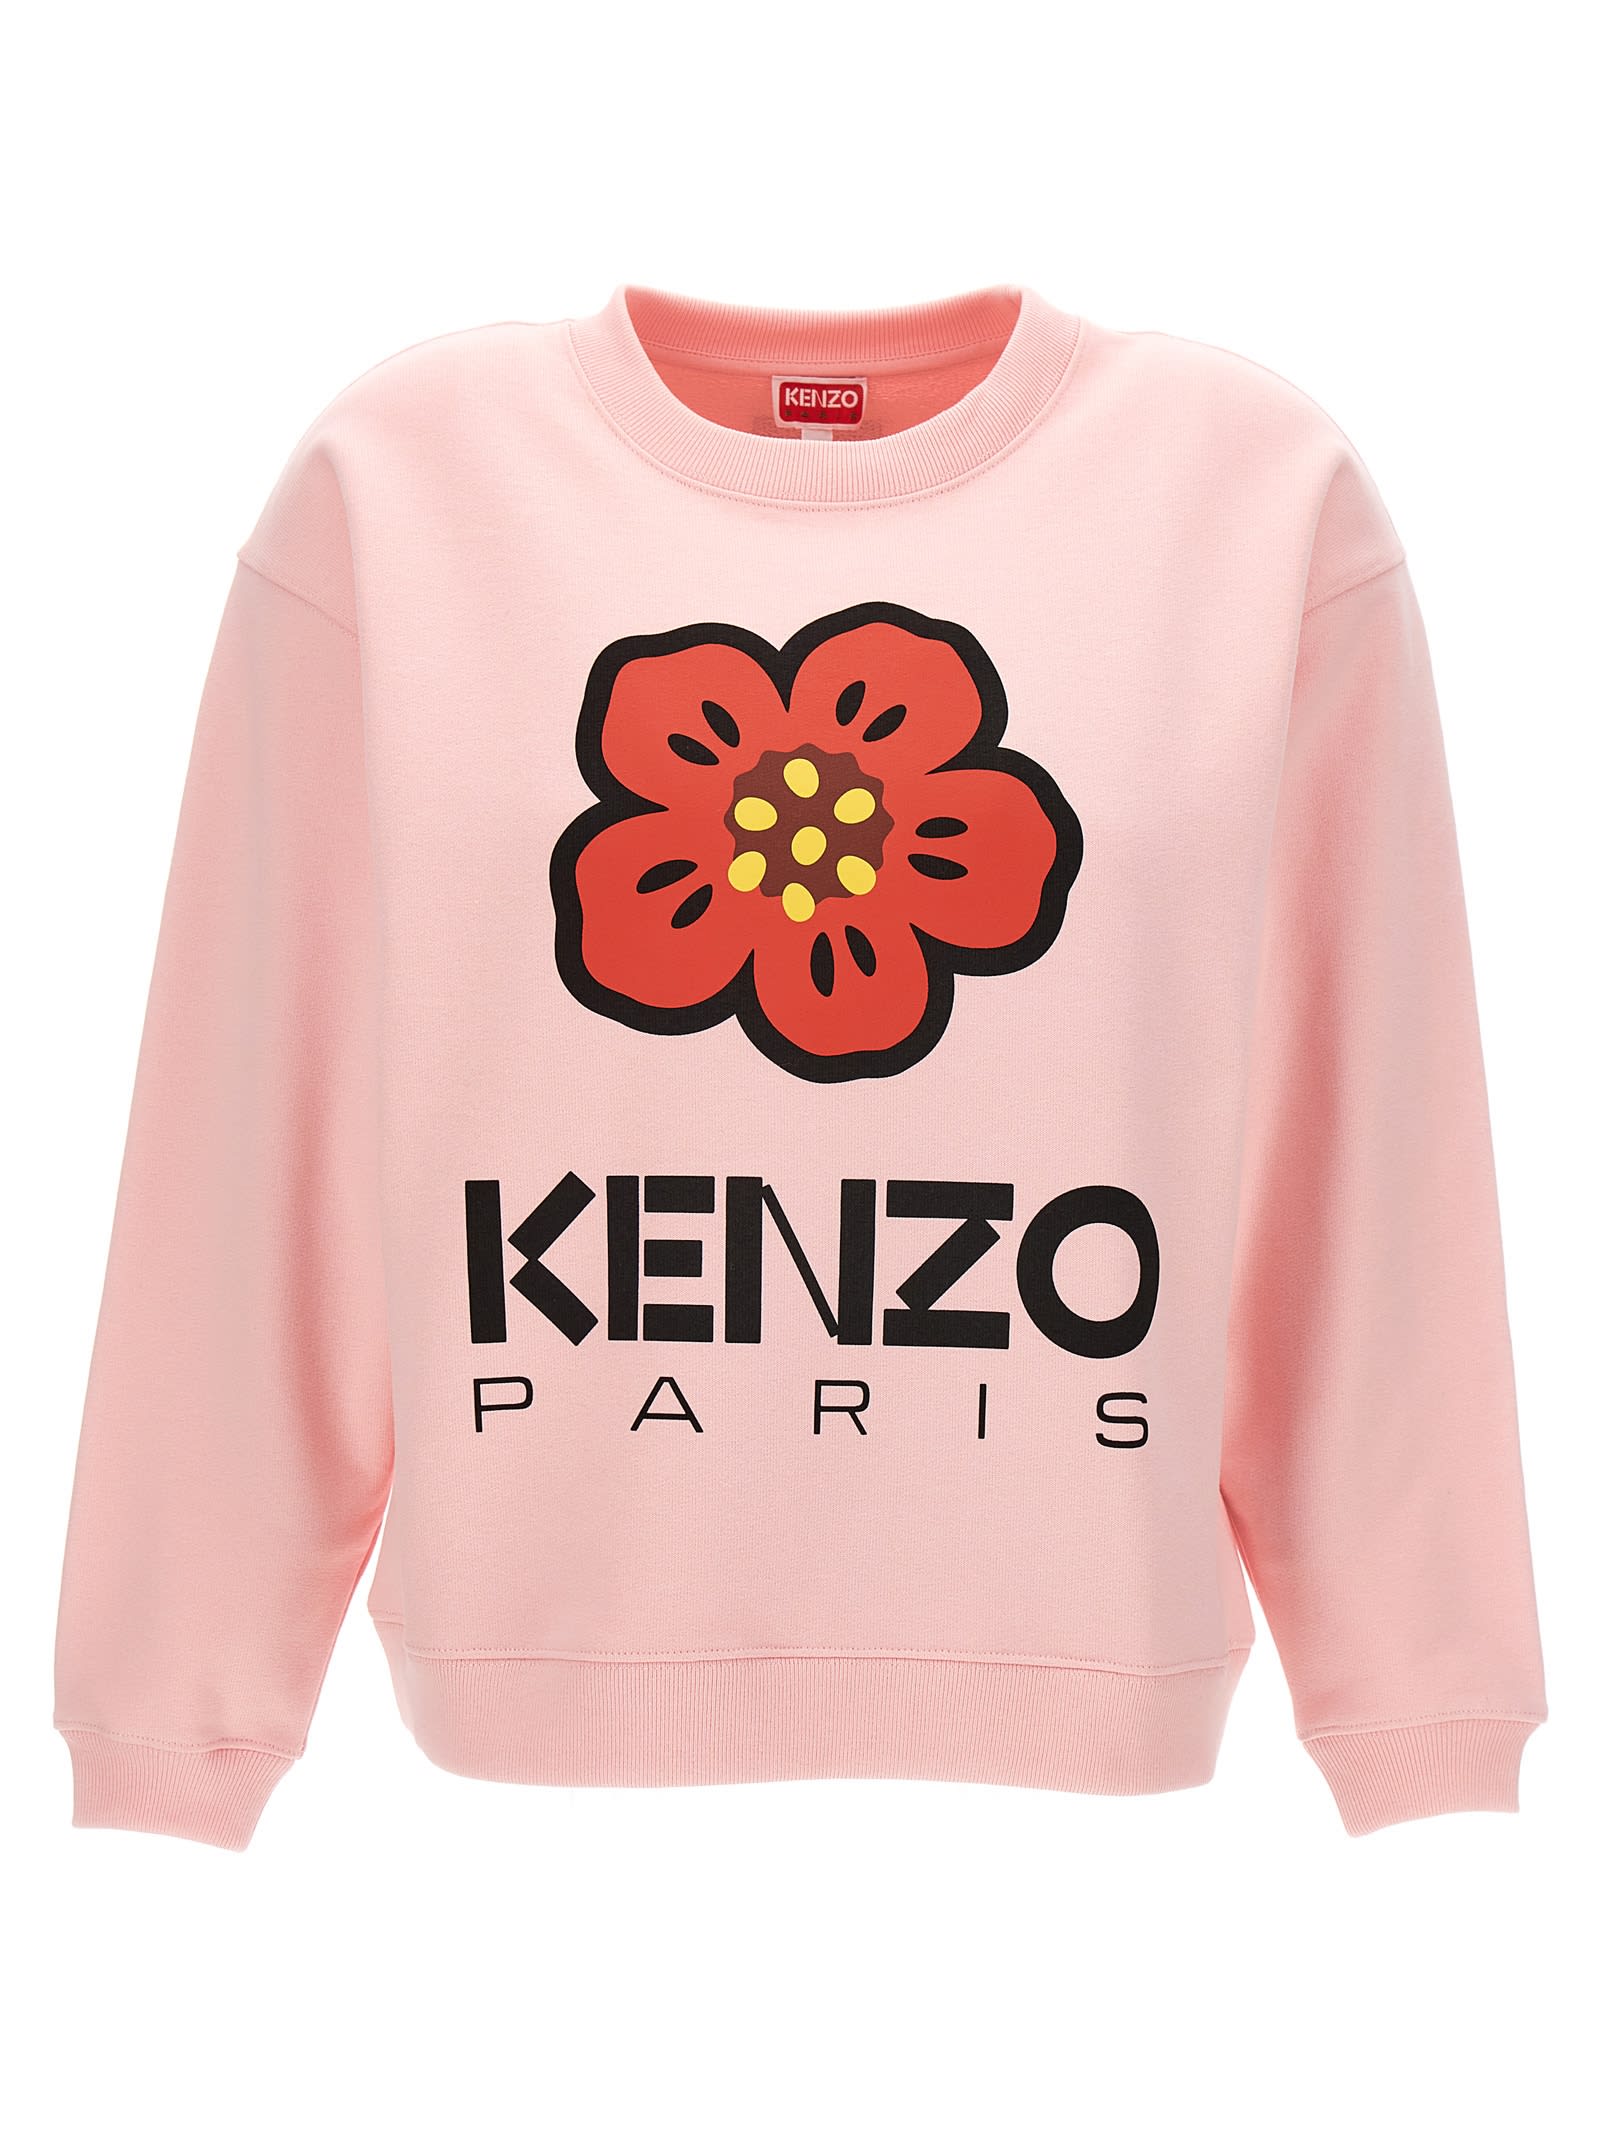 Shop Kenzo Paris Sweatshirt In Pink